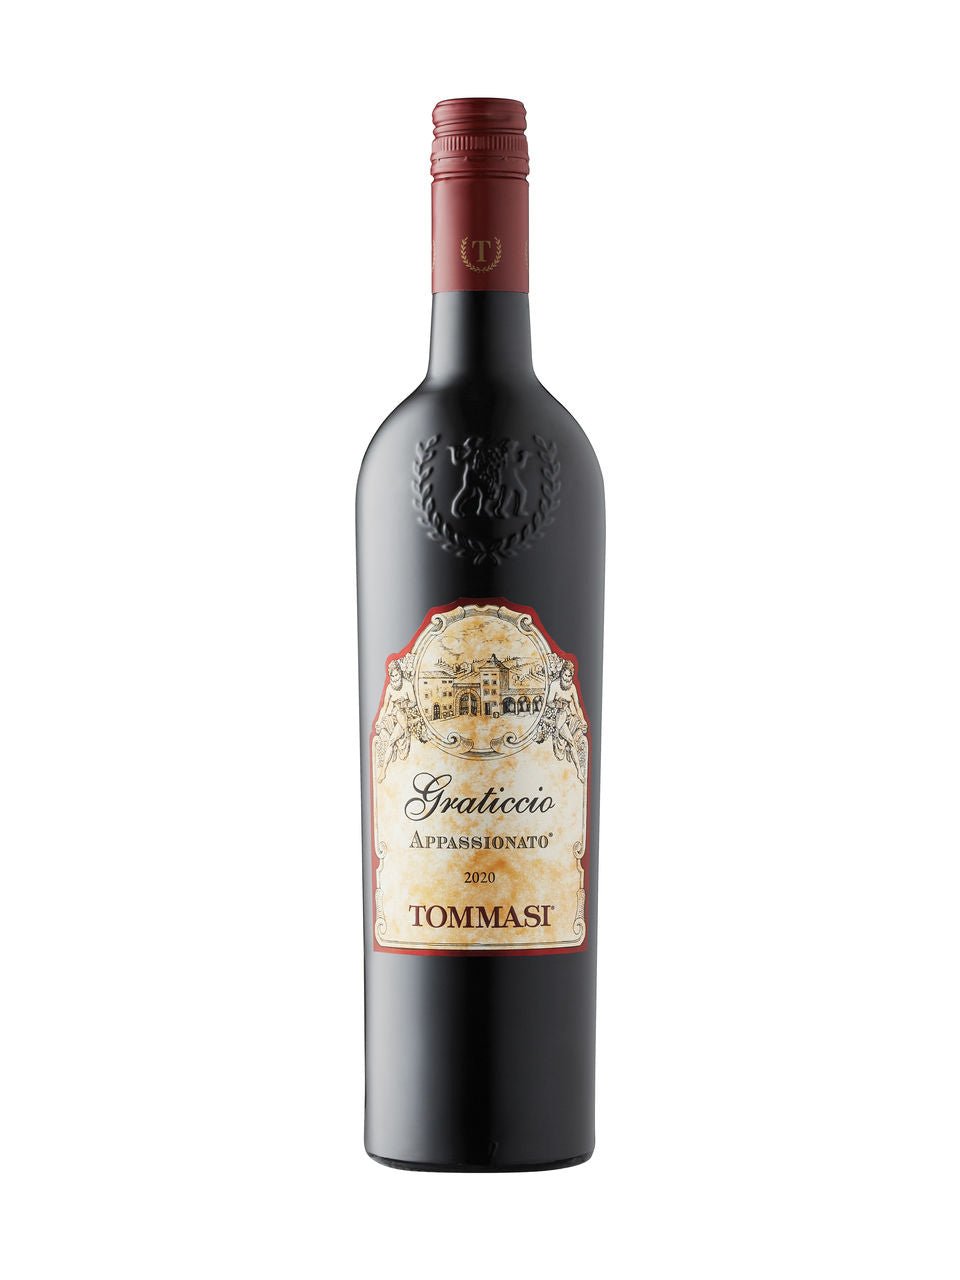 Tommasi Graticcio Appassionato 2020 | Exquisite Wine & Alcohol Gift Delivery Toronto Canada | Vyno